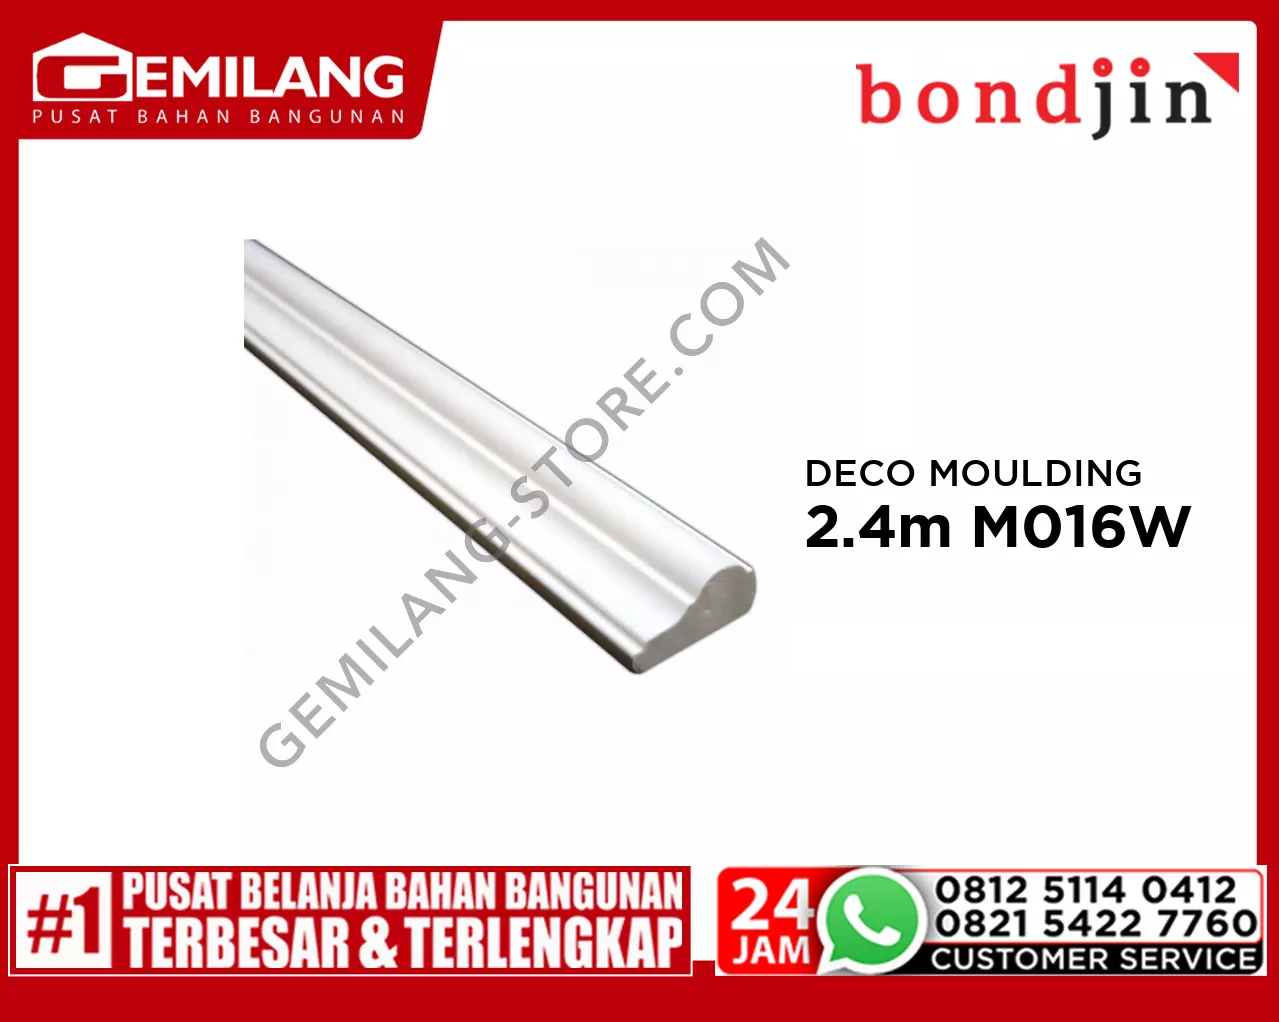 BONDJIN DECO MOULDING 2.4M M016-W